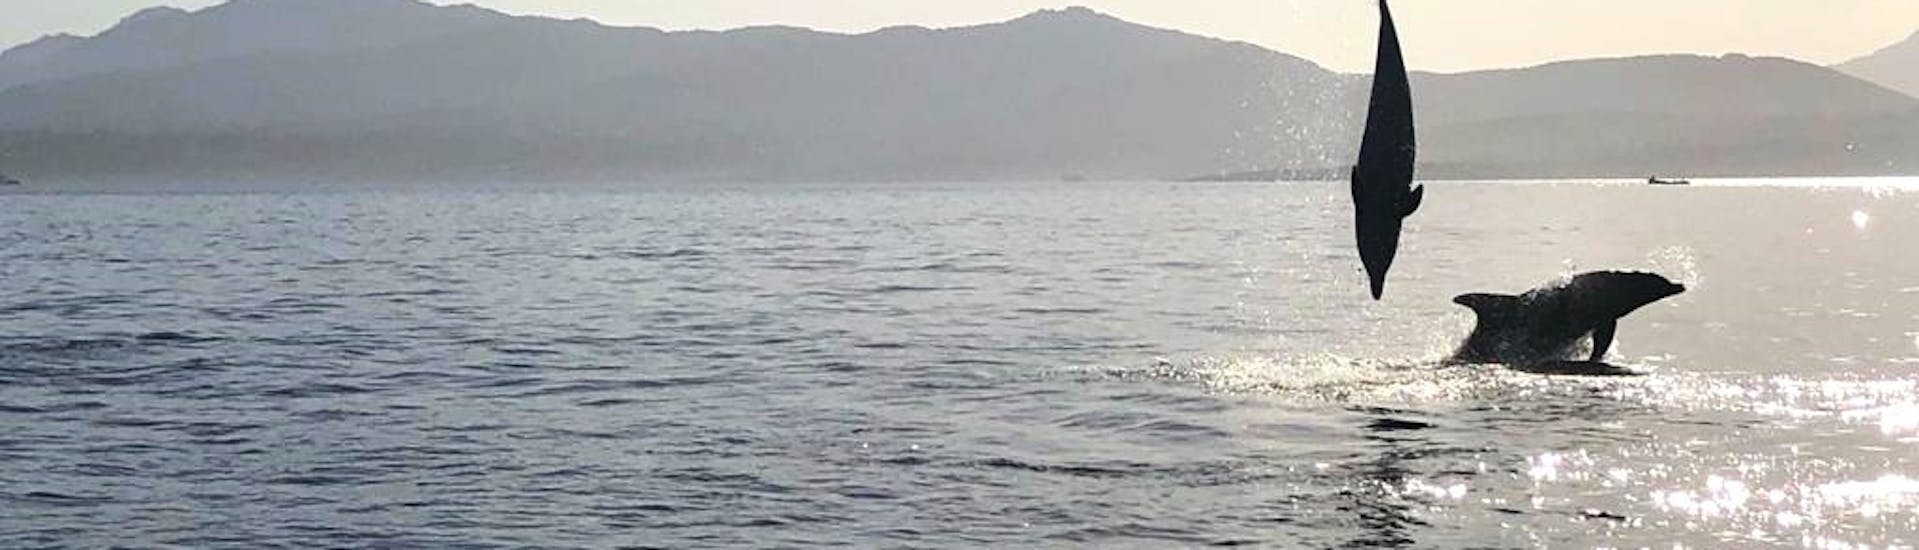 Alcuni delfini saltano nell'acqua durante il Giro in gommone a Golfo Aranci con avvistamento delfini e snorkeling con DST Sardegna Golfo Aranci.